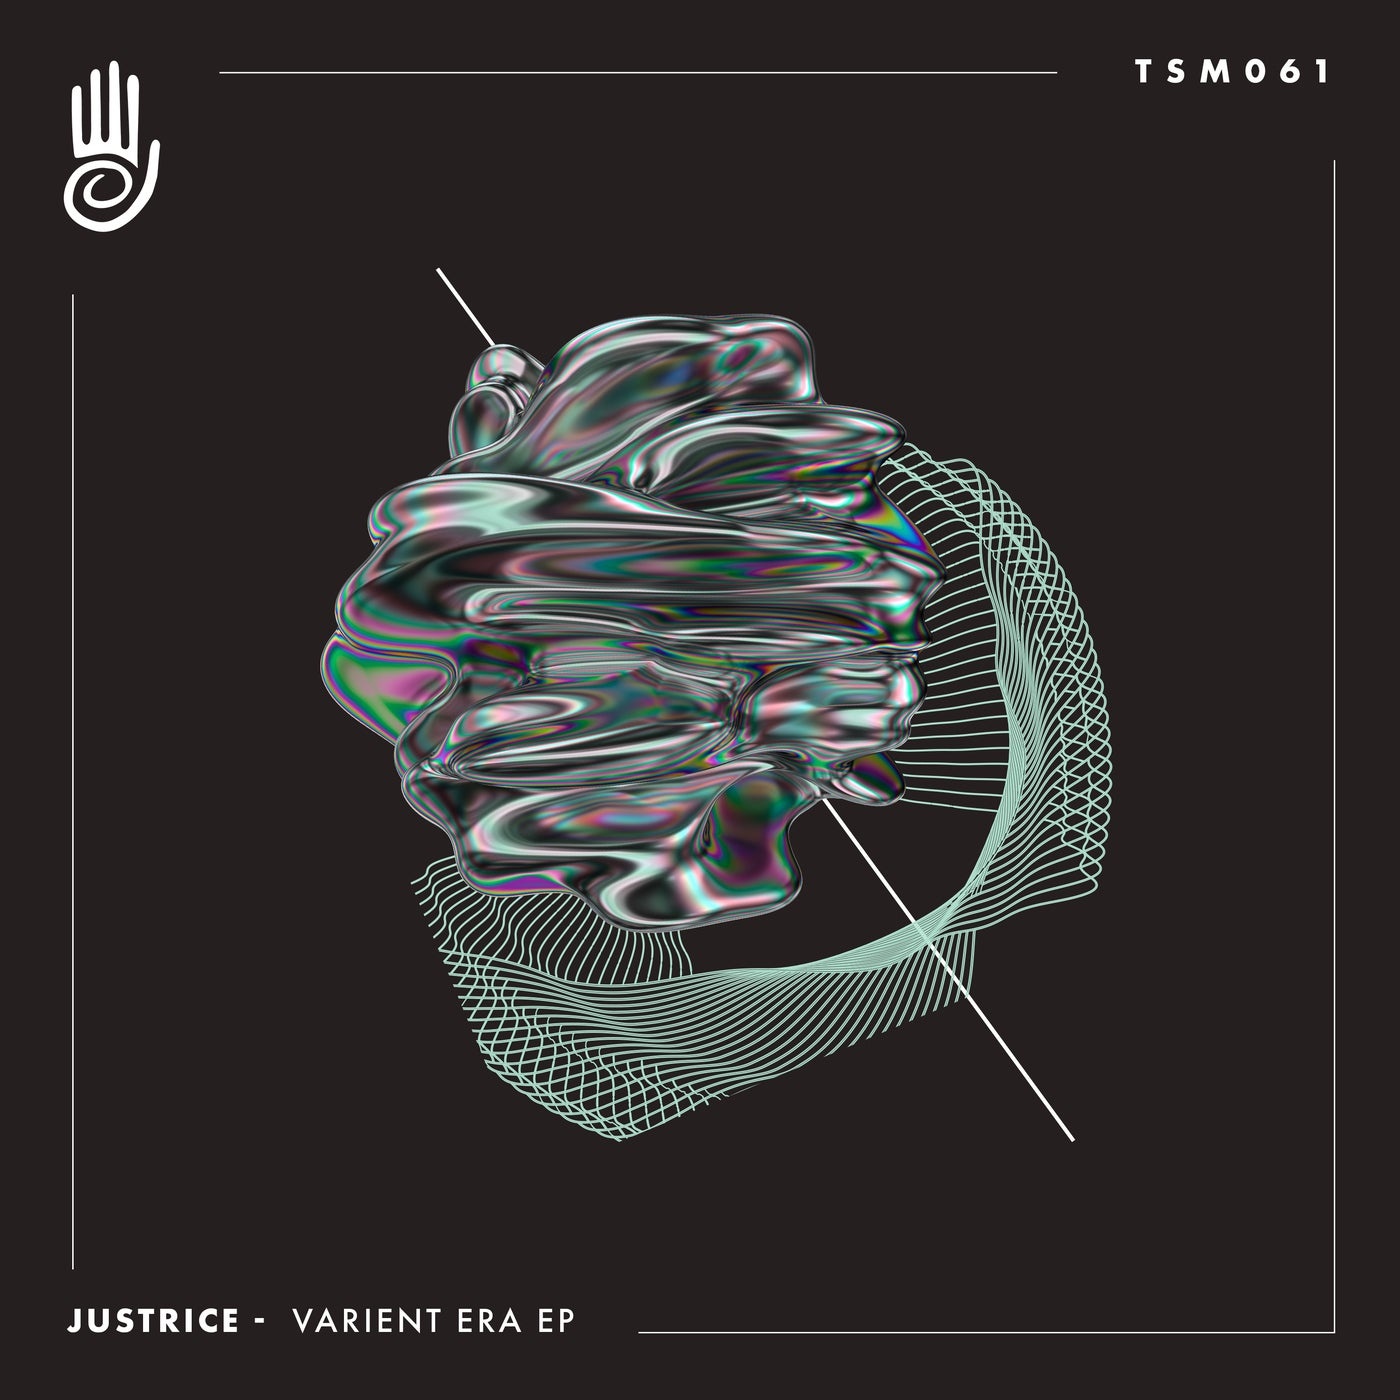 Justrice - Varient Era EP [TSM061]